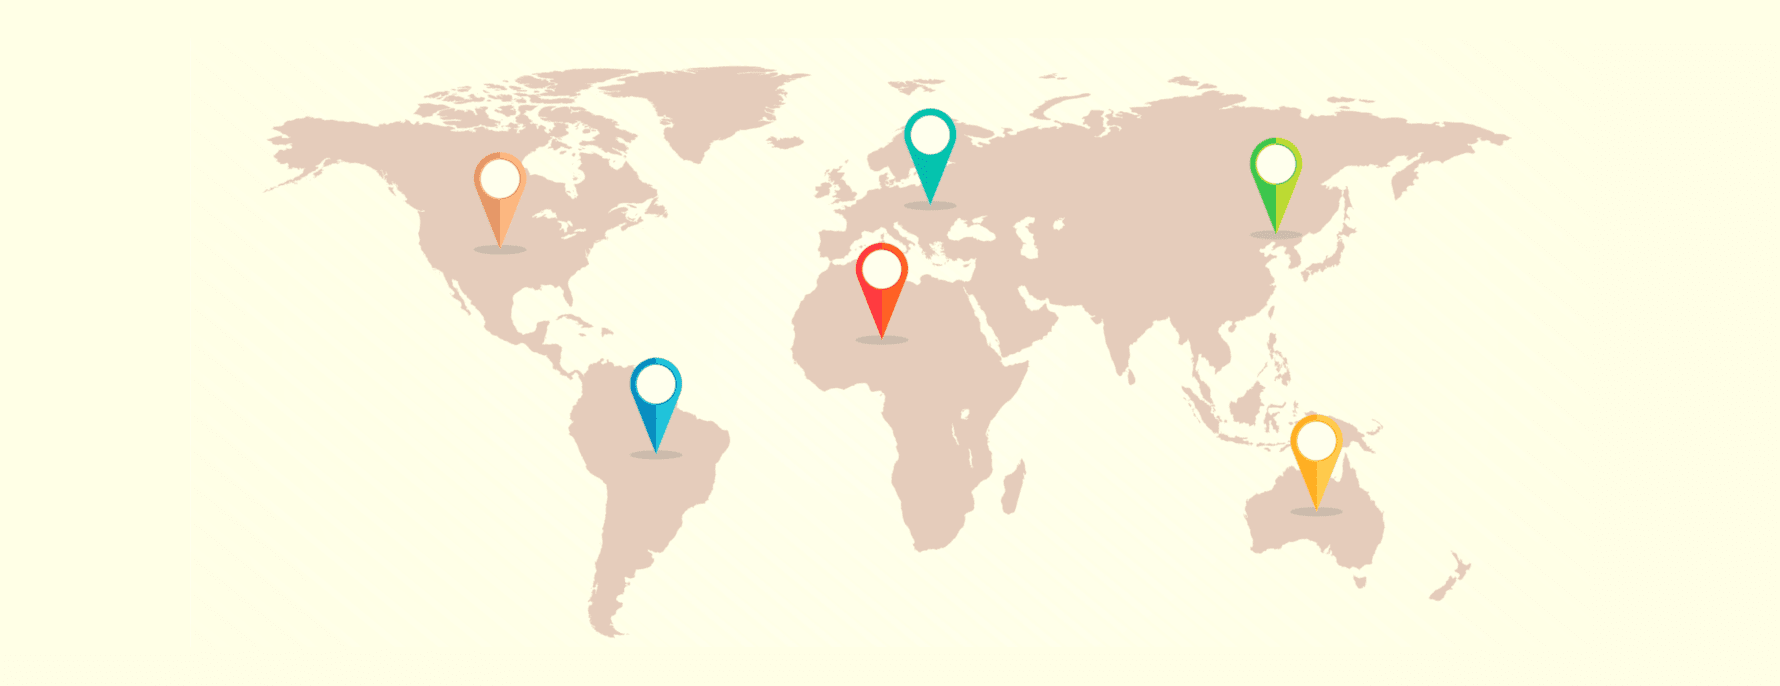 نقشه جهانی که حوزه های مختلف VPN را به تصویر می کشد